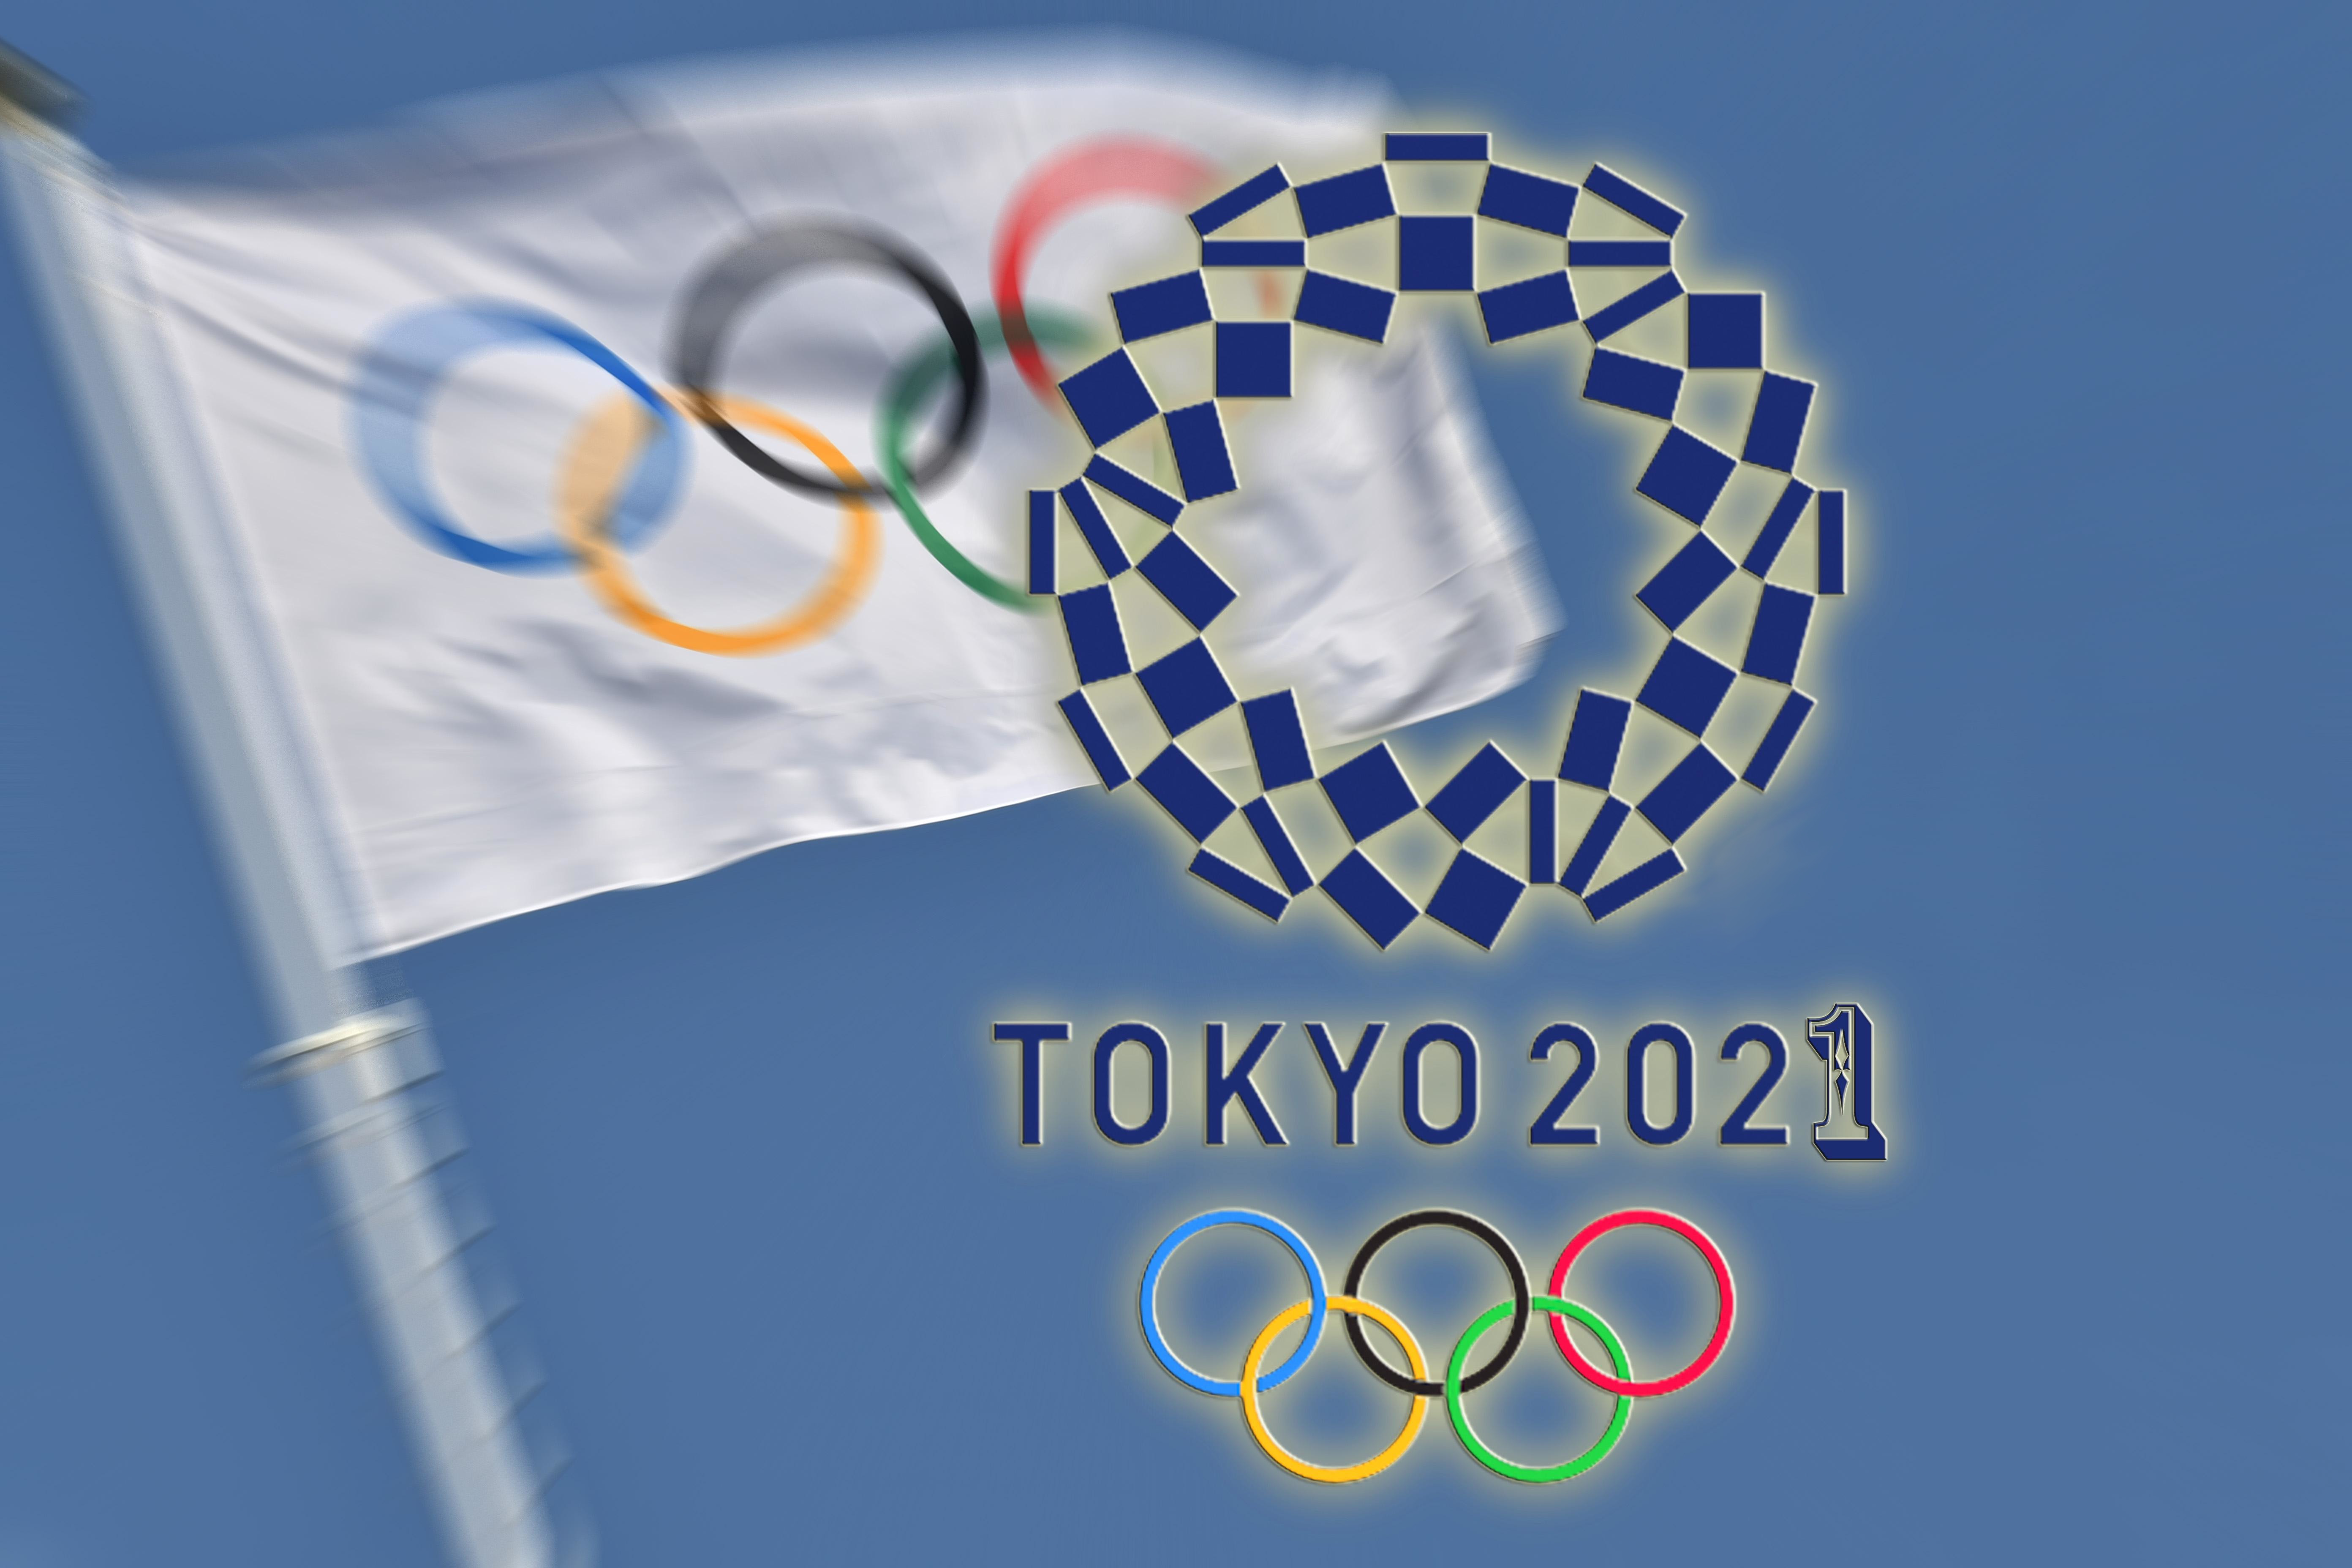 Олимпиада 2021 стартует в Токио в июле 2021 года